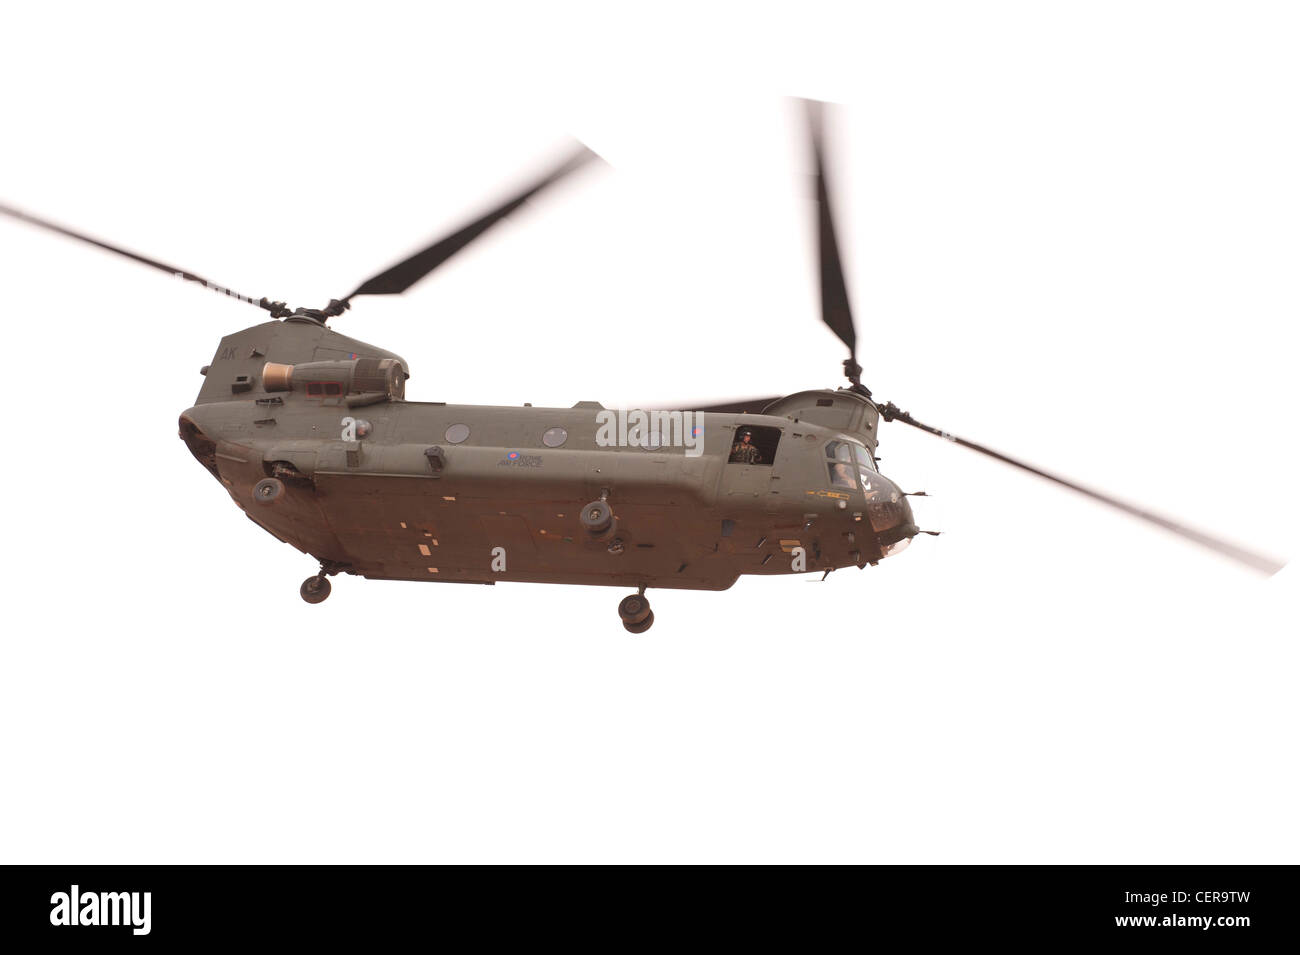 RAF elicotteri Chinook sulle manovre nel deserto marocchino, corsi di formazione per la distribuzione in Afghanistan. Foto Stock